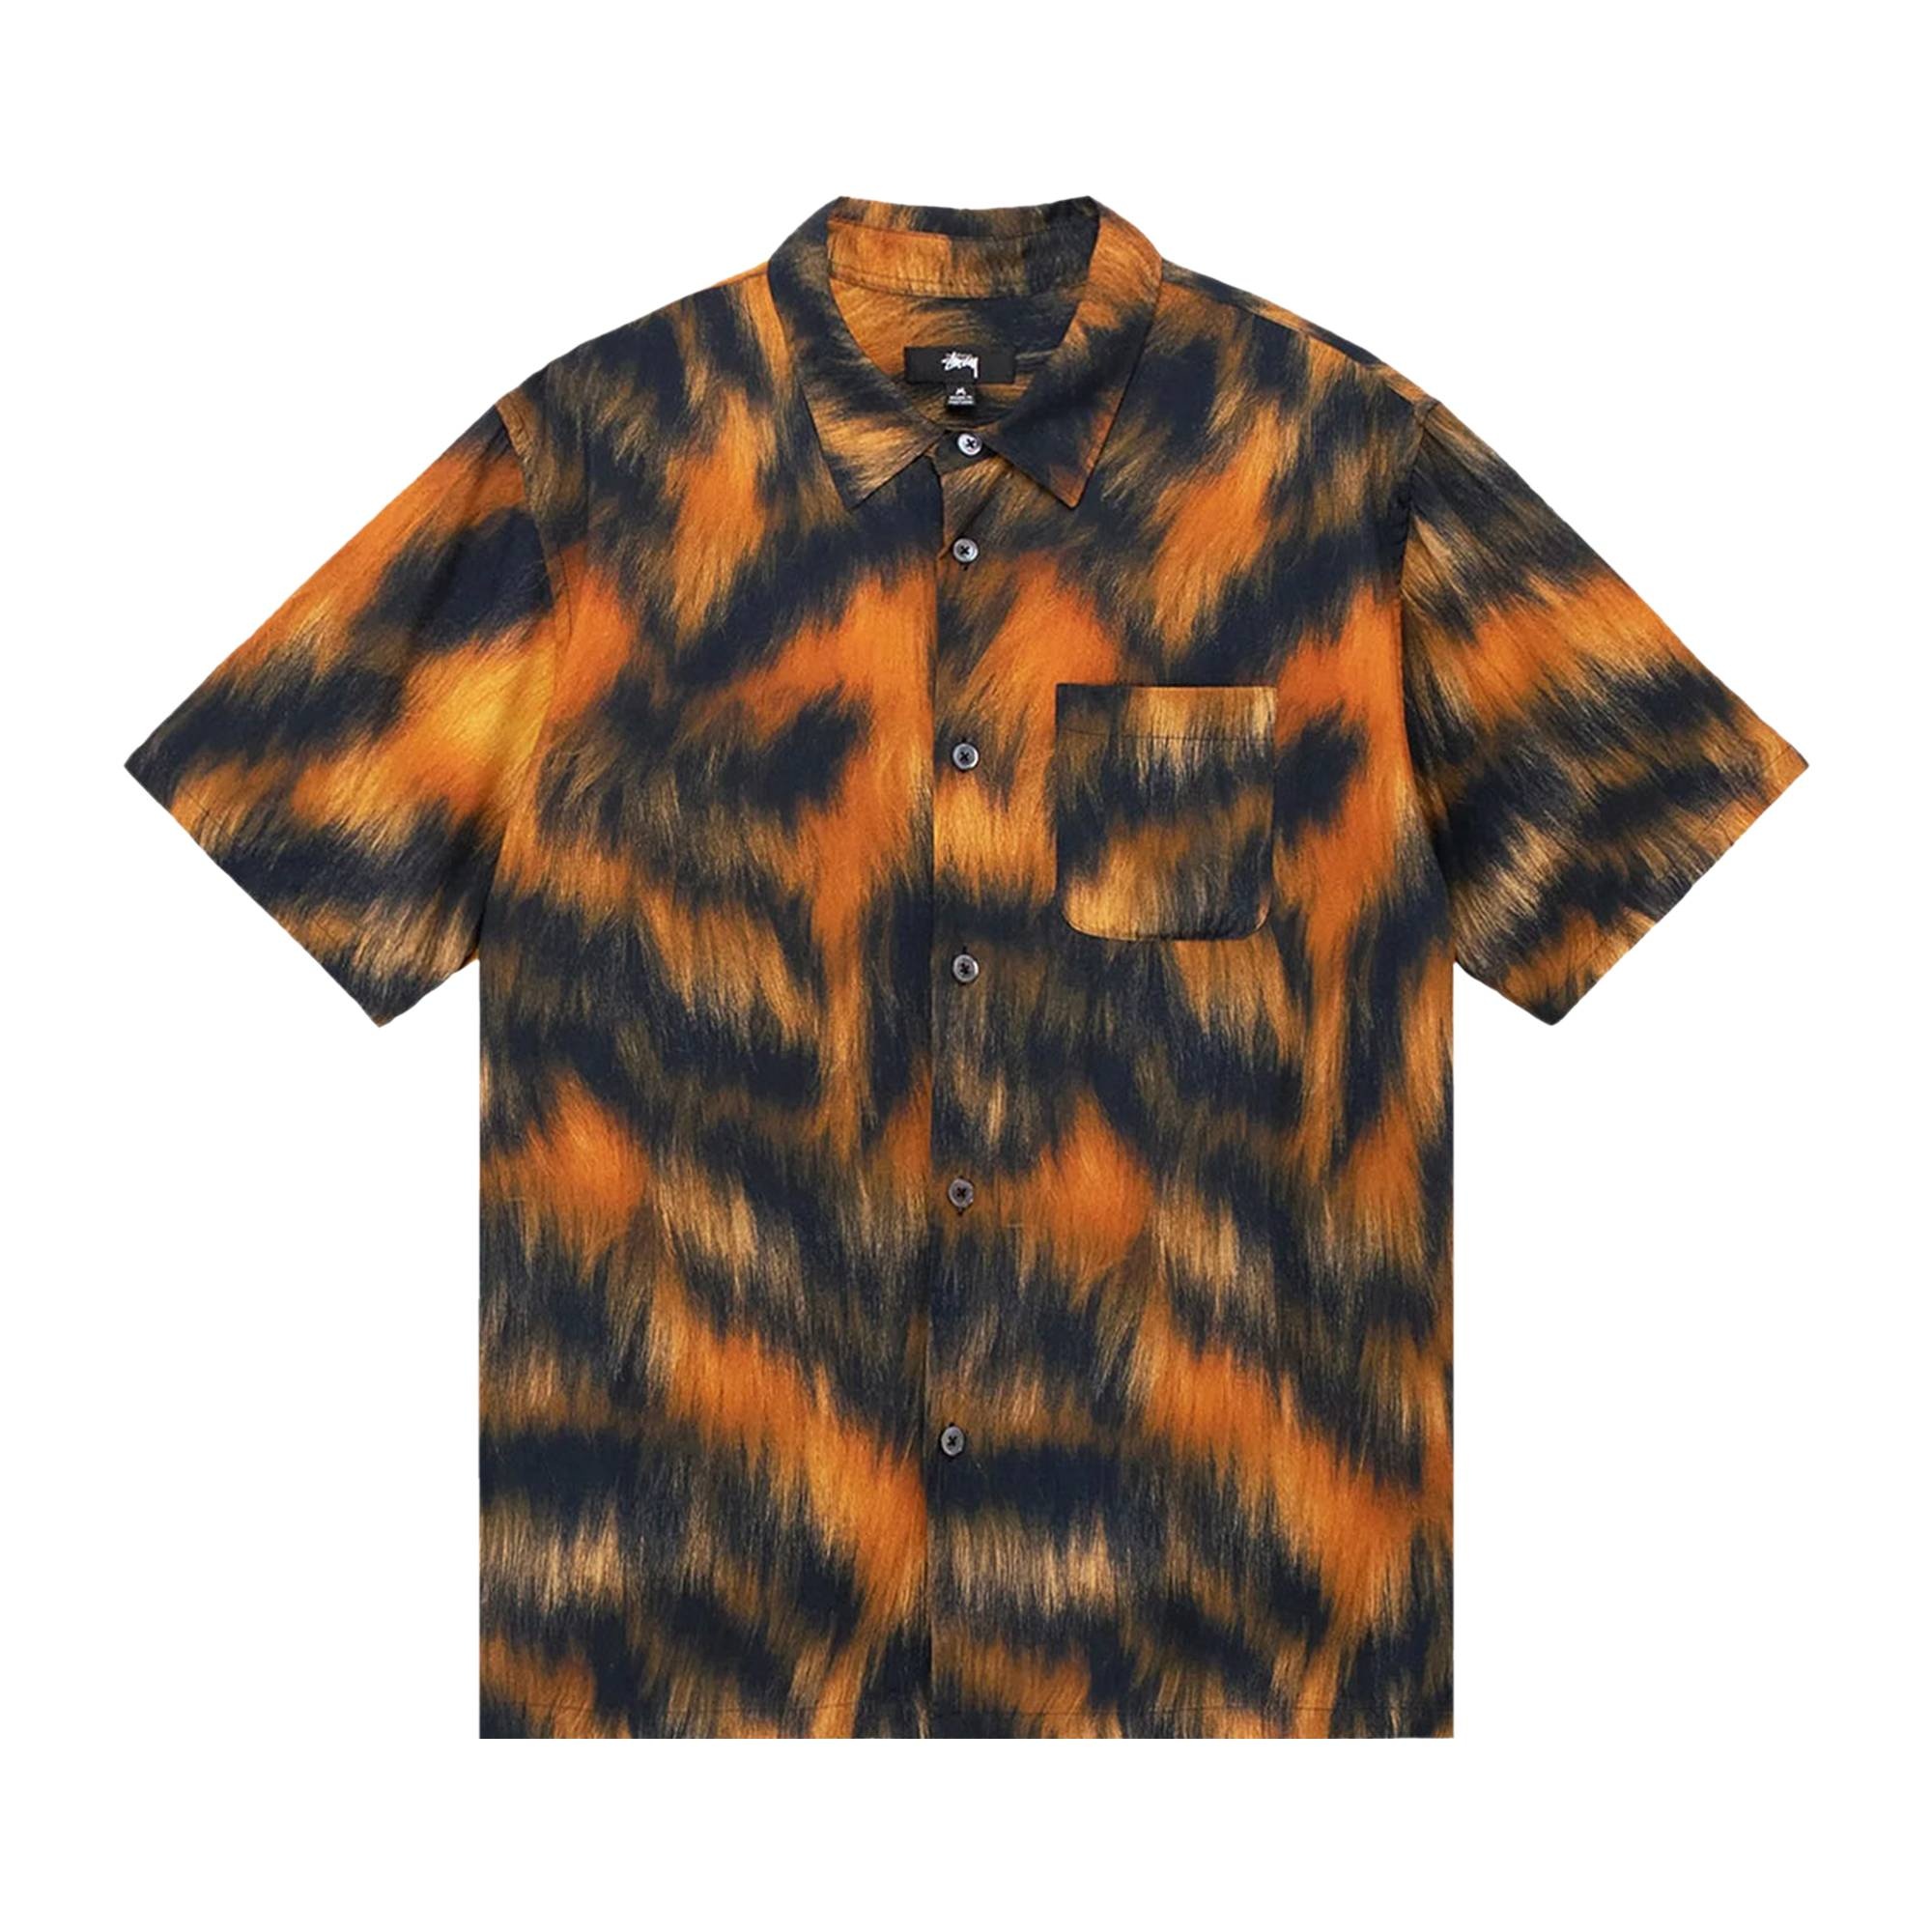 Stussy Fur Print Shirt 'Tiger' - 1